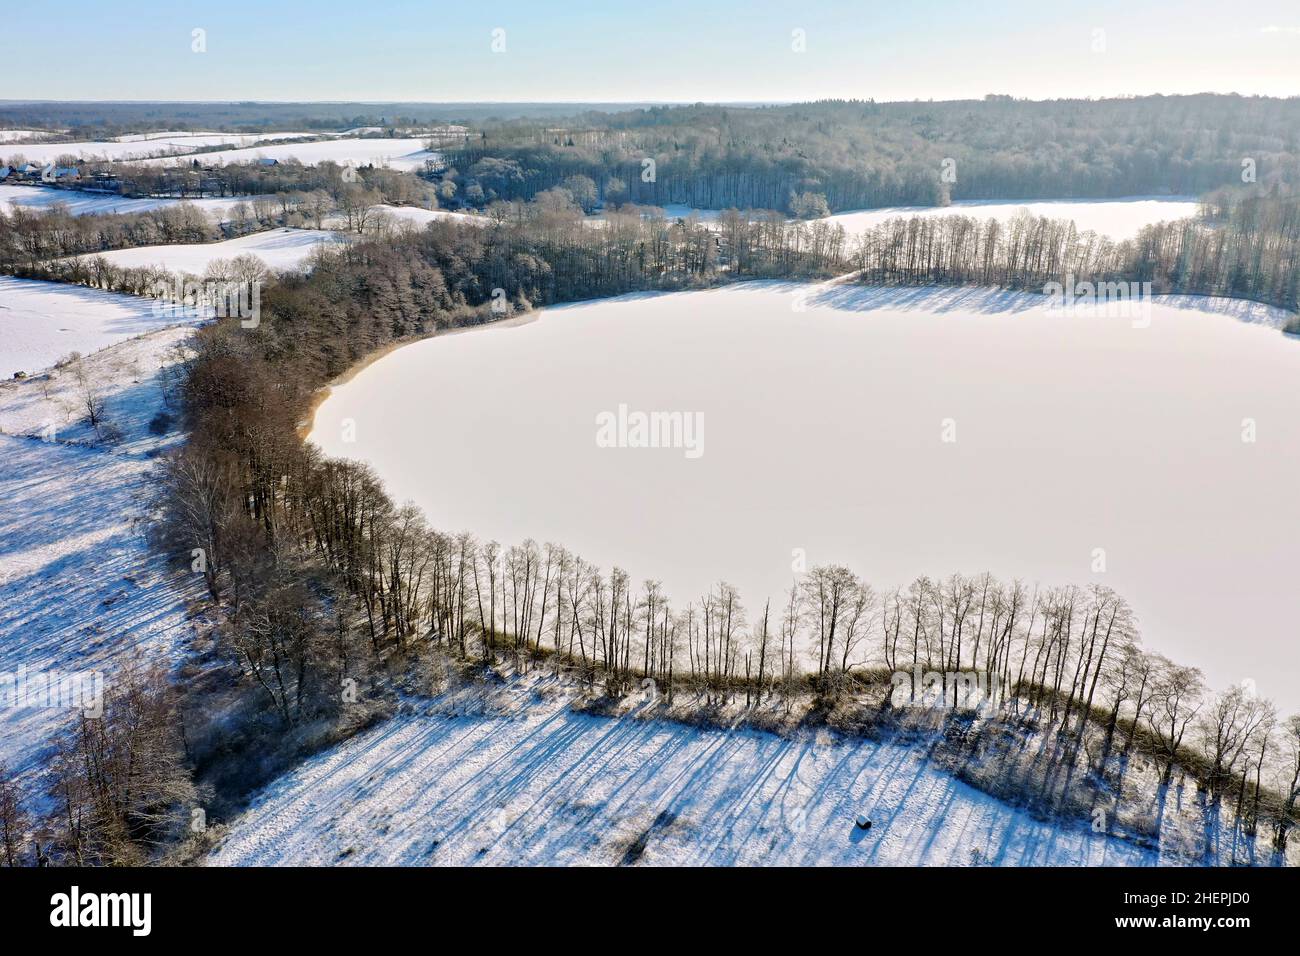 Paysage culturel enneigé avec pâturages et haies et lac gelé Lankau, photo de drone, Allemagne, Schleswig-Holstein Banque D'Images